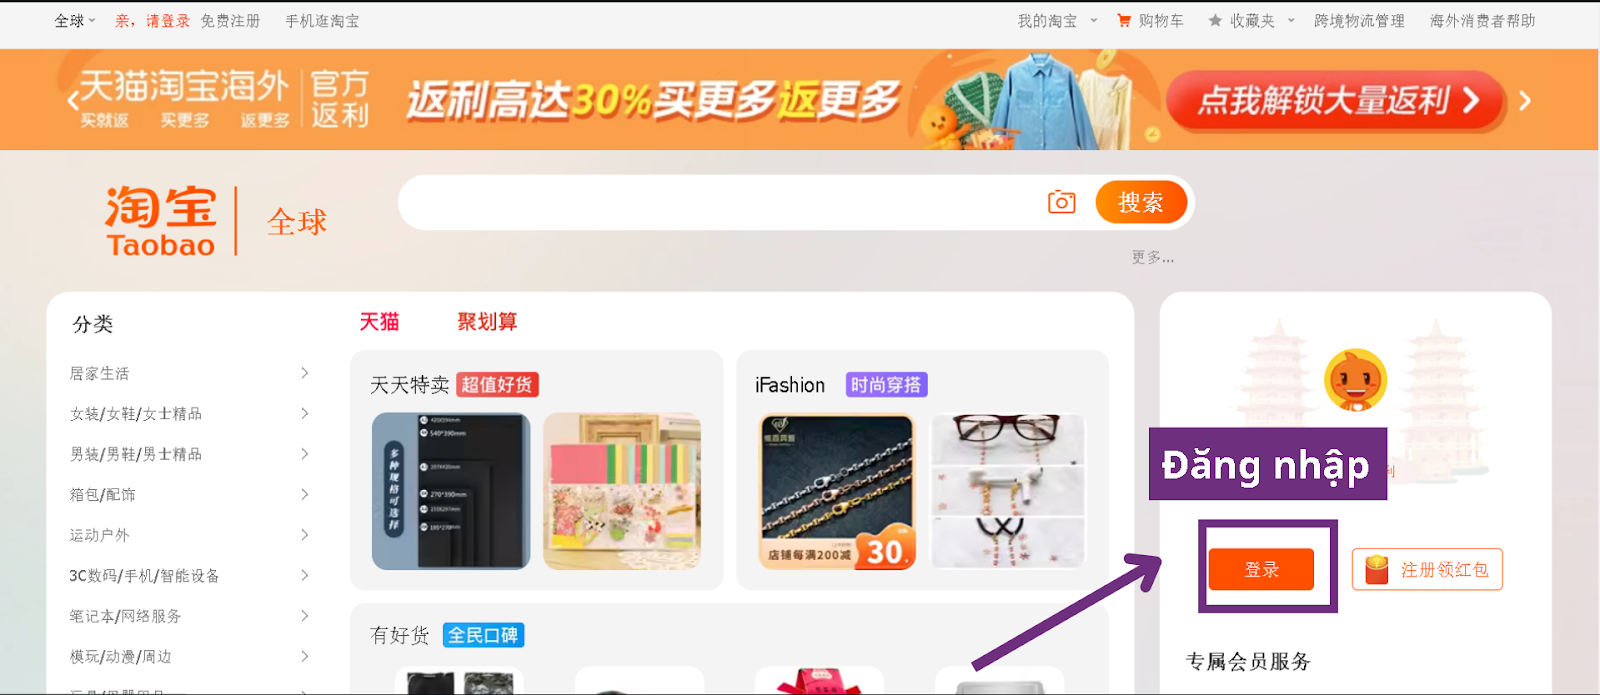 Nhấn vào mục Đăng nhập (免费) để đăng ký tài khoản Taobao